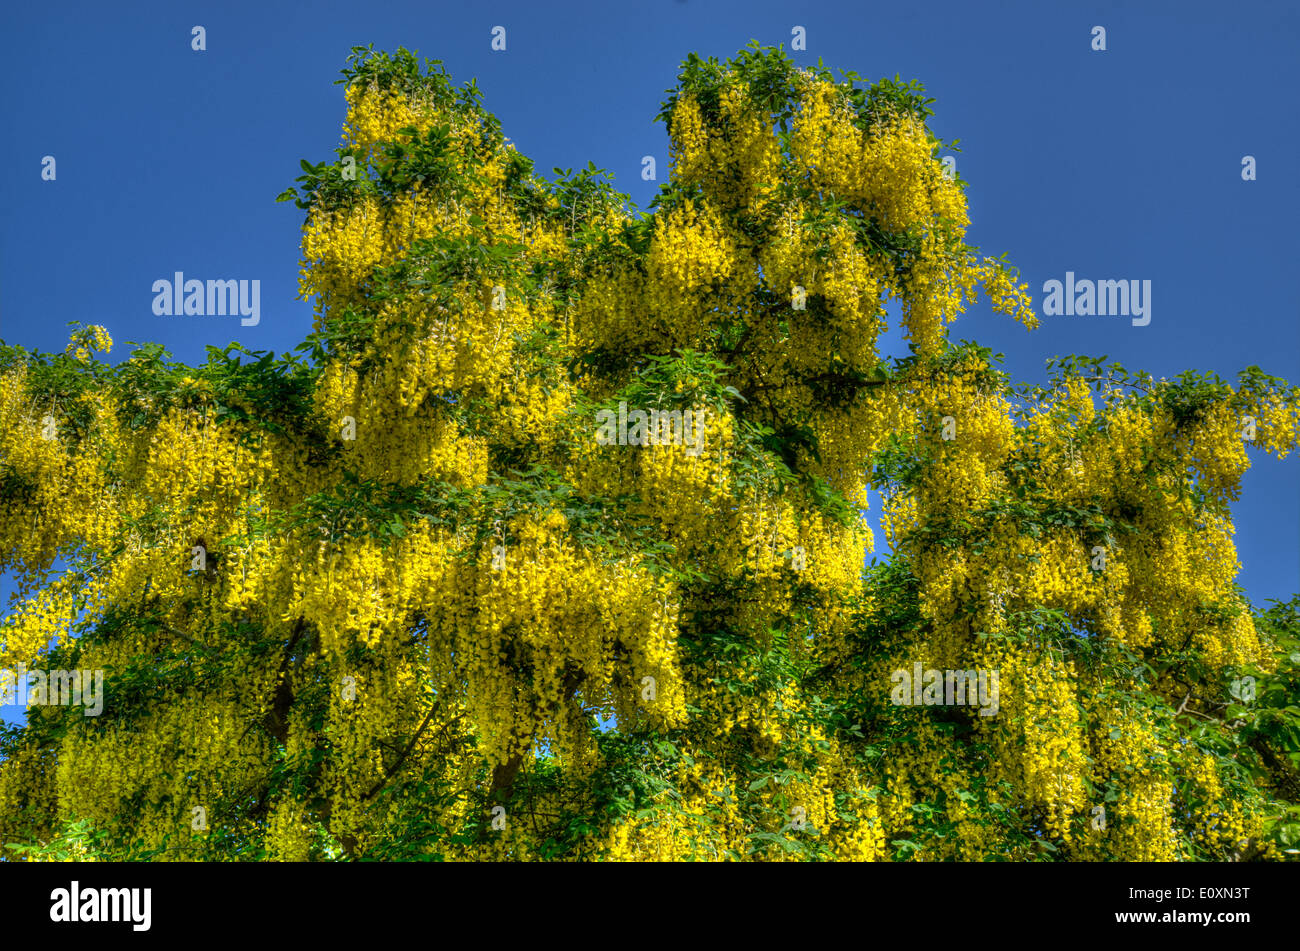 Yellow Laburnum flowers Stock Photo